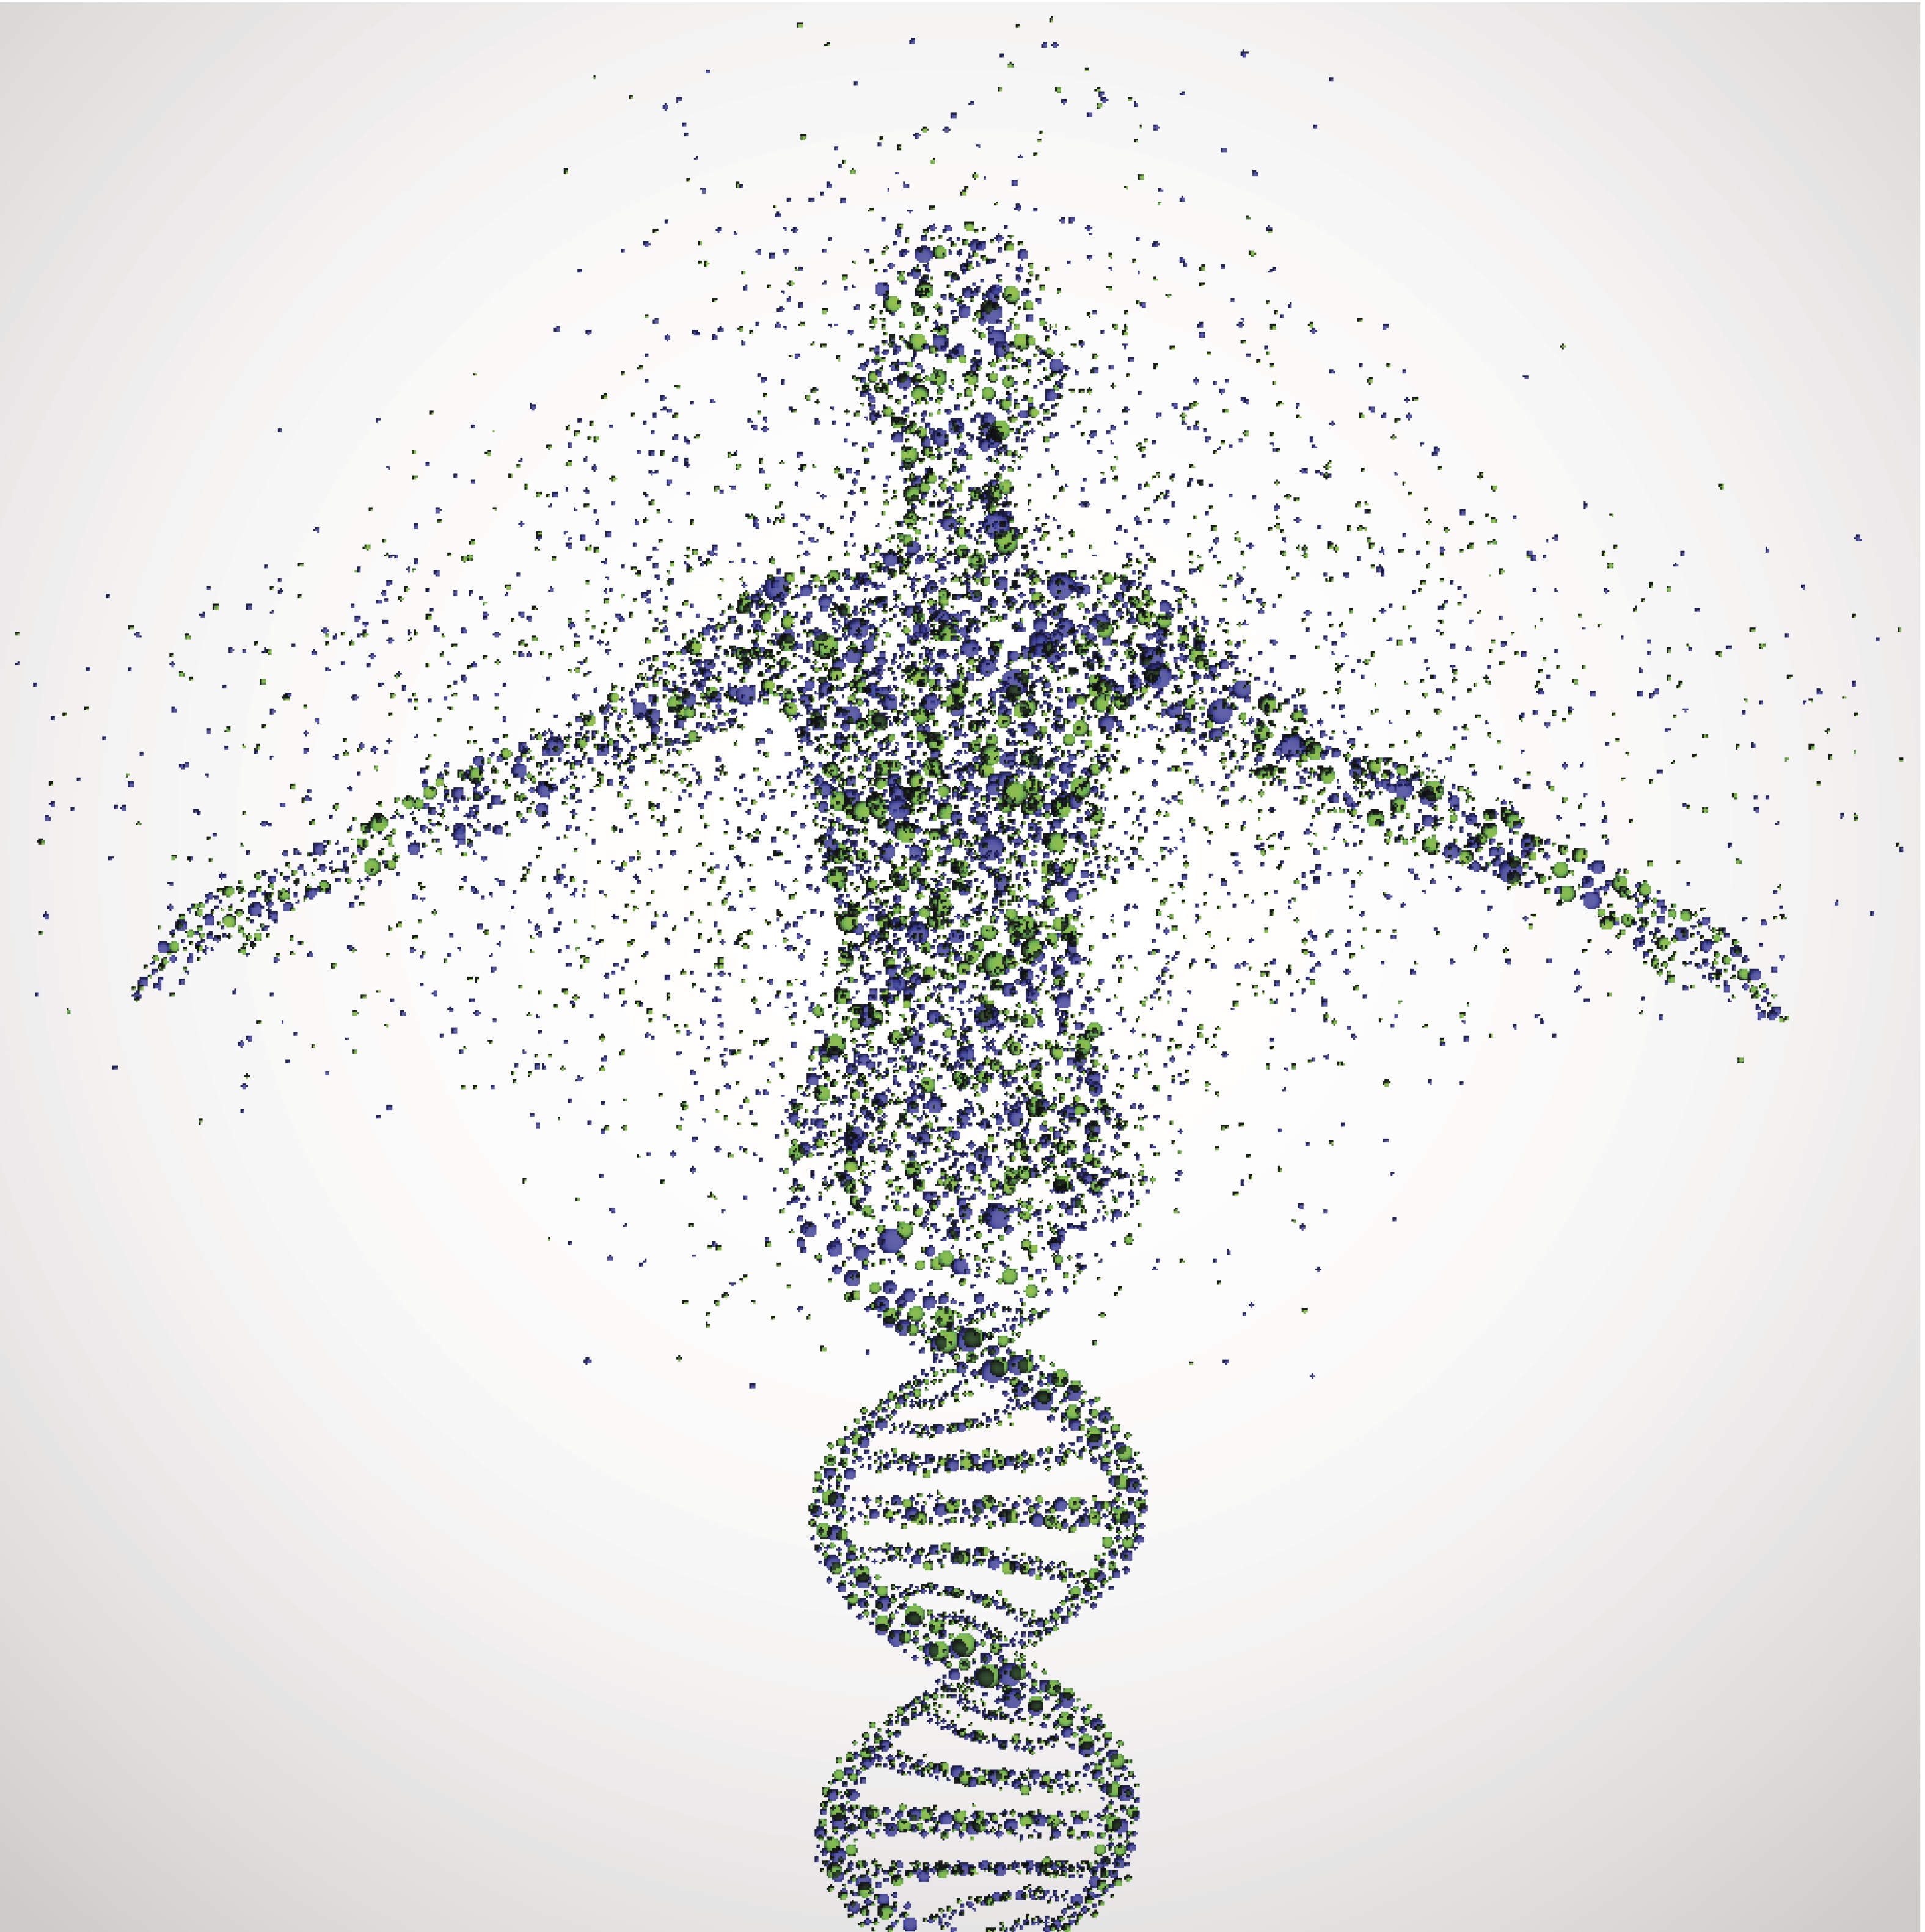 El Proyecto del genoma humano se ha completado. El proyecto, que empezó en el 1990, identificó a todos los 20,000 a 25,000 genes del ADN humano y determinó las secuencias de 3 billones de pares de bases químicas que componen el ADN humano. La información que generó el Proyecto del genoma humano tiene el potencial de impulsar el desarrollo de nuevas maneras revolucionarias de diagnosticar, tratar y prevenir miles de enfermedades, incluyendo al cáncer. 121US Department of Energy: Office of Science                      2National Institutes of Health; National Human Genome Research Institute      